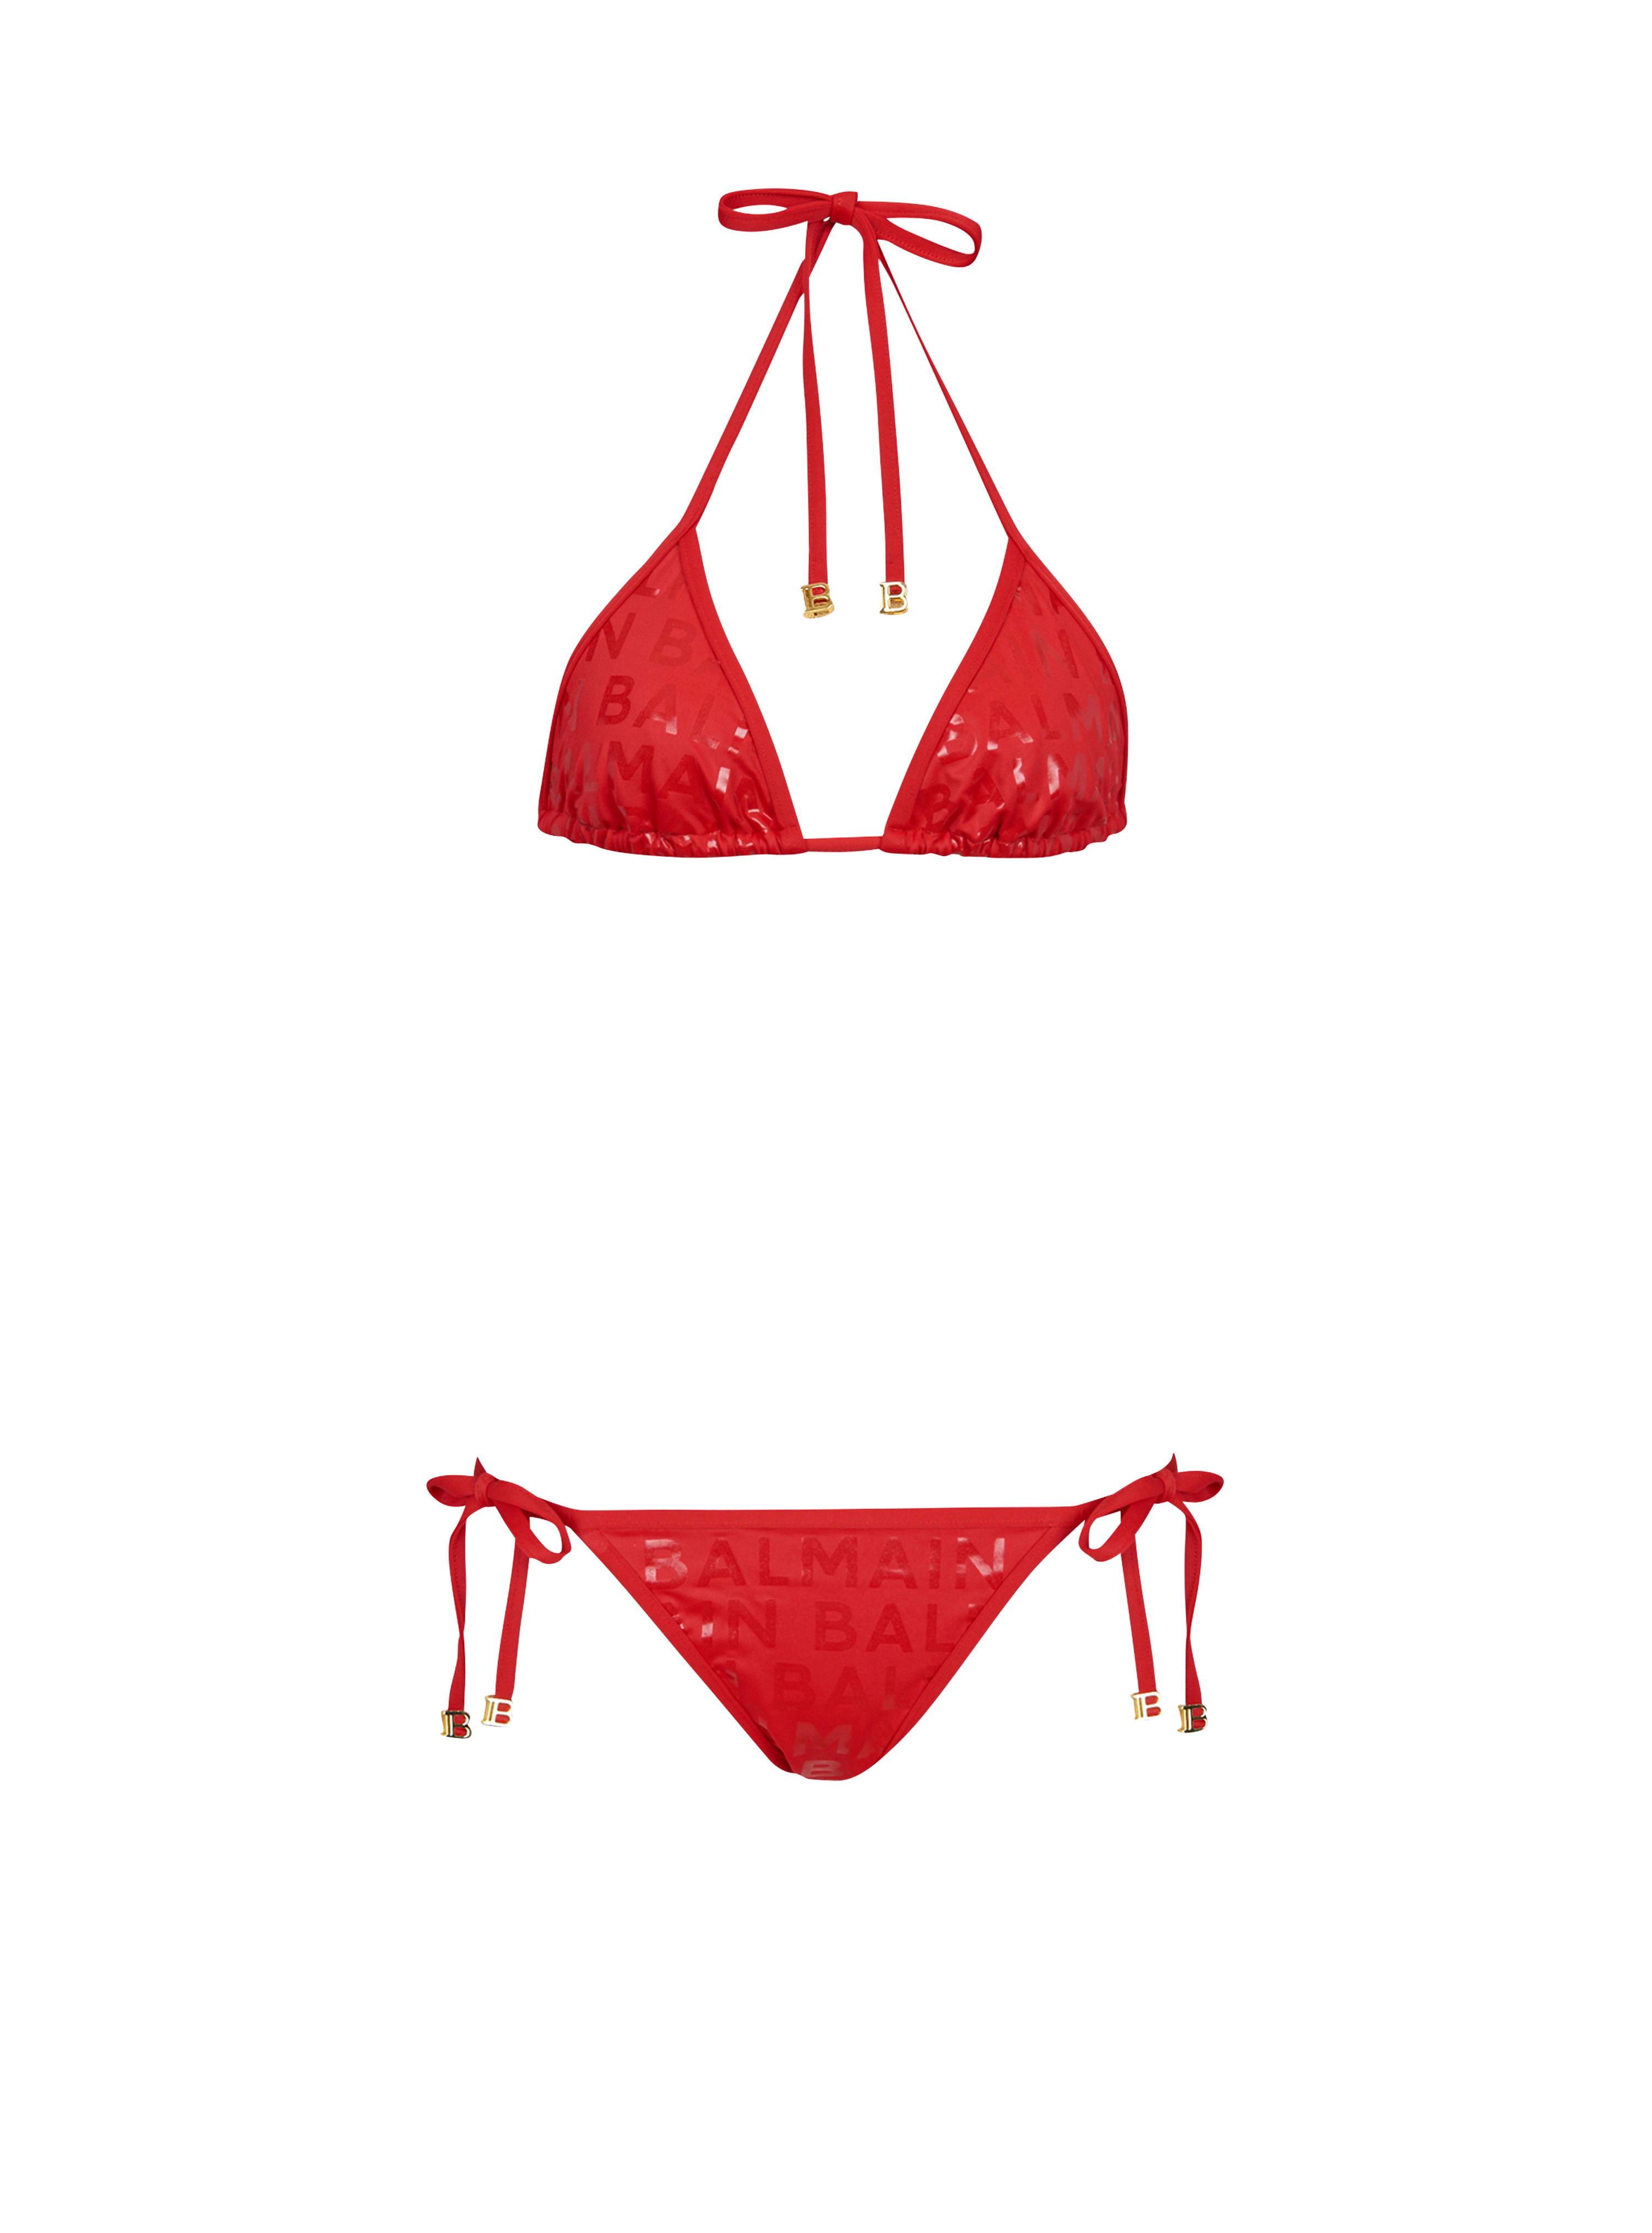 Bikini con logotipo de Balmain, rojo